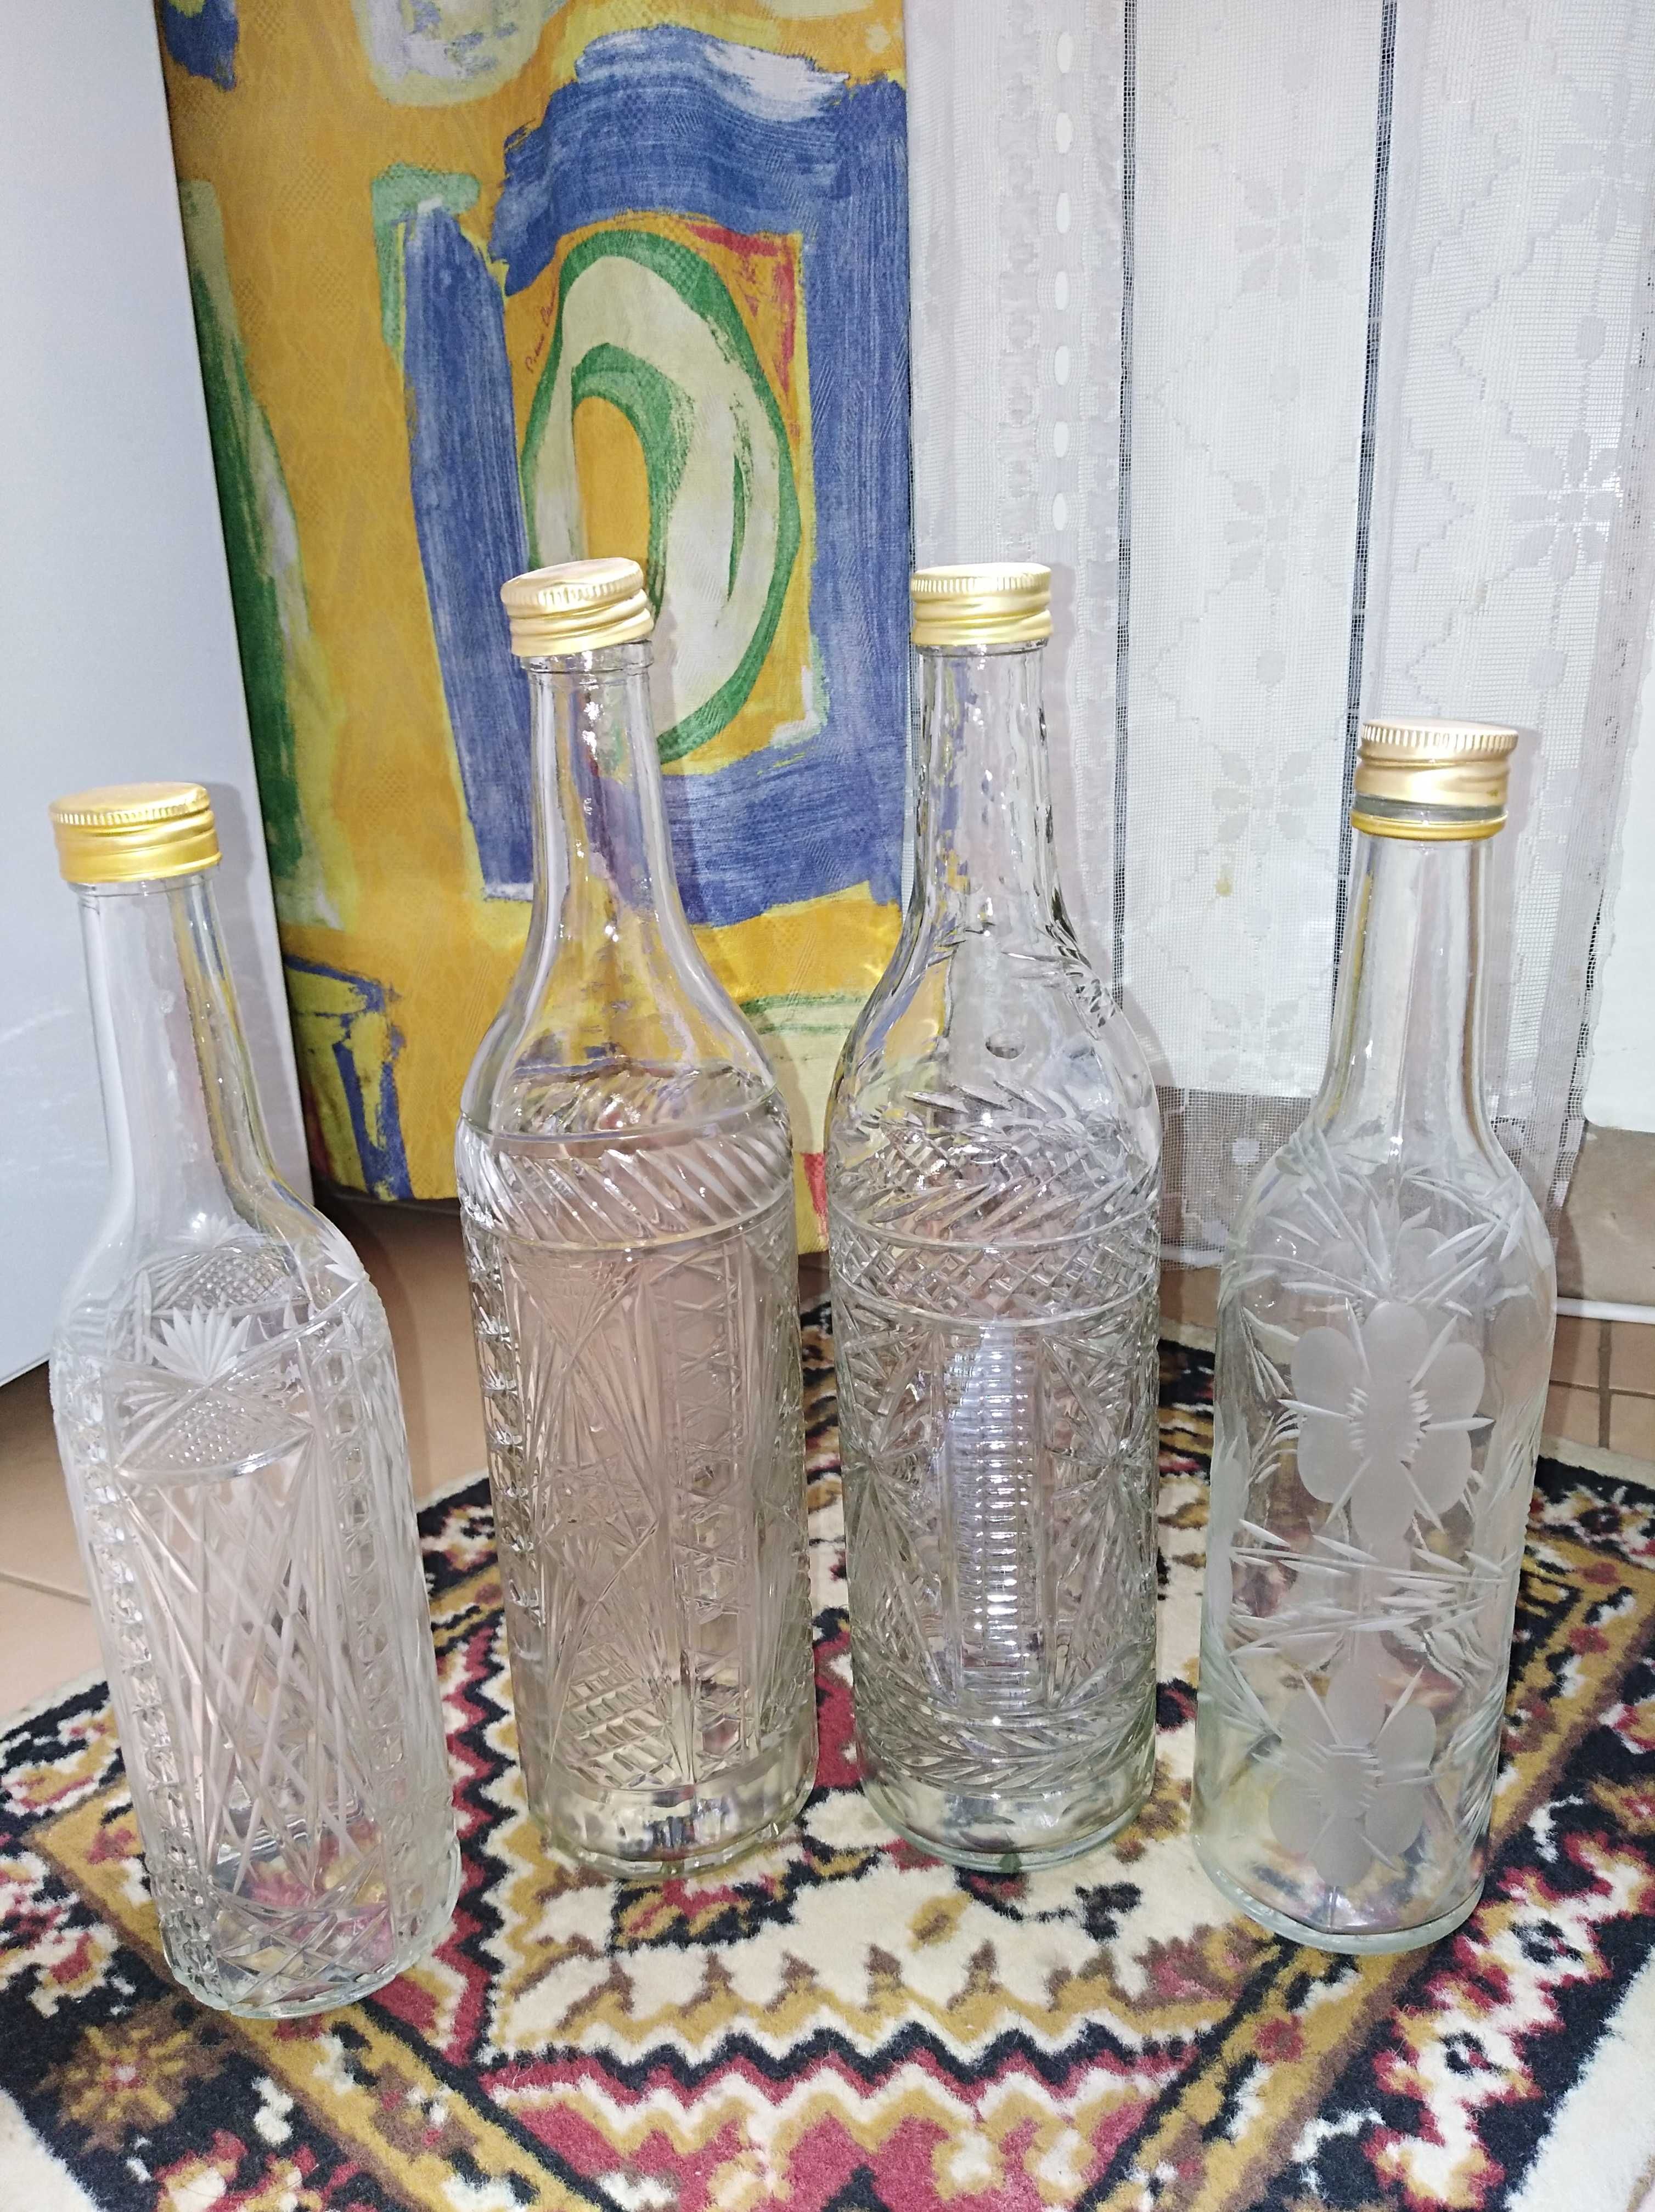 Бутылки декоративные с резными узорами в виде цветов времен СССР